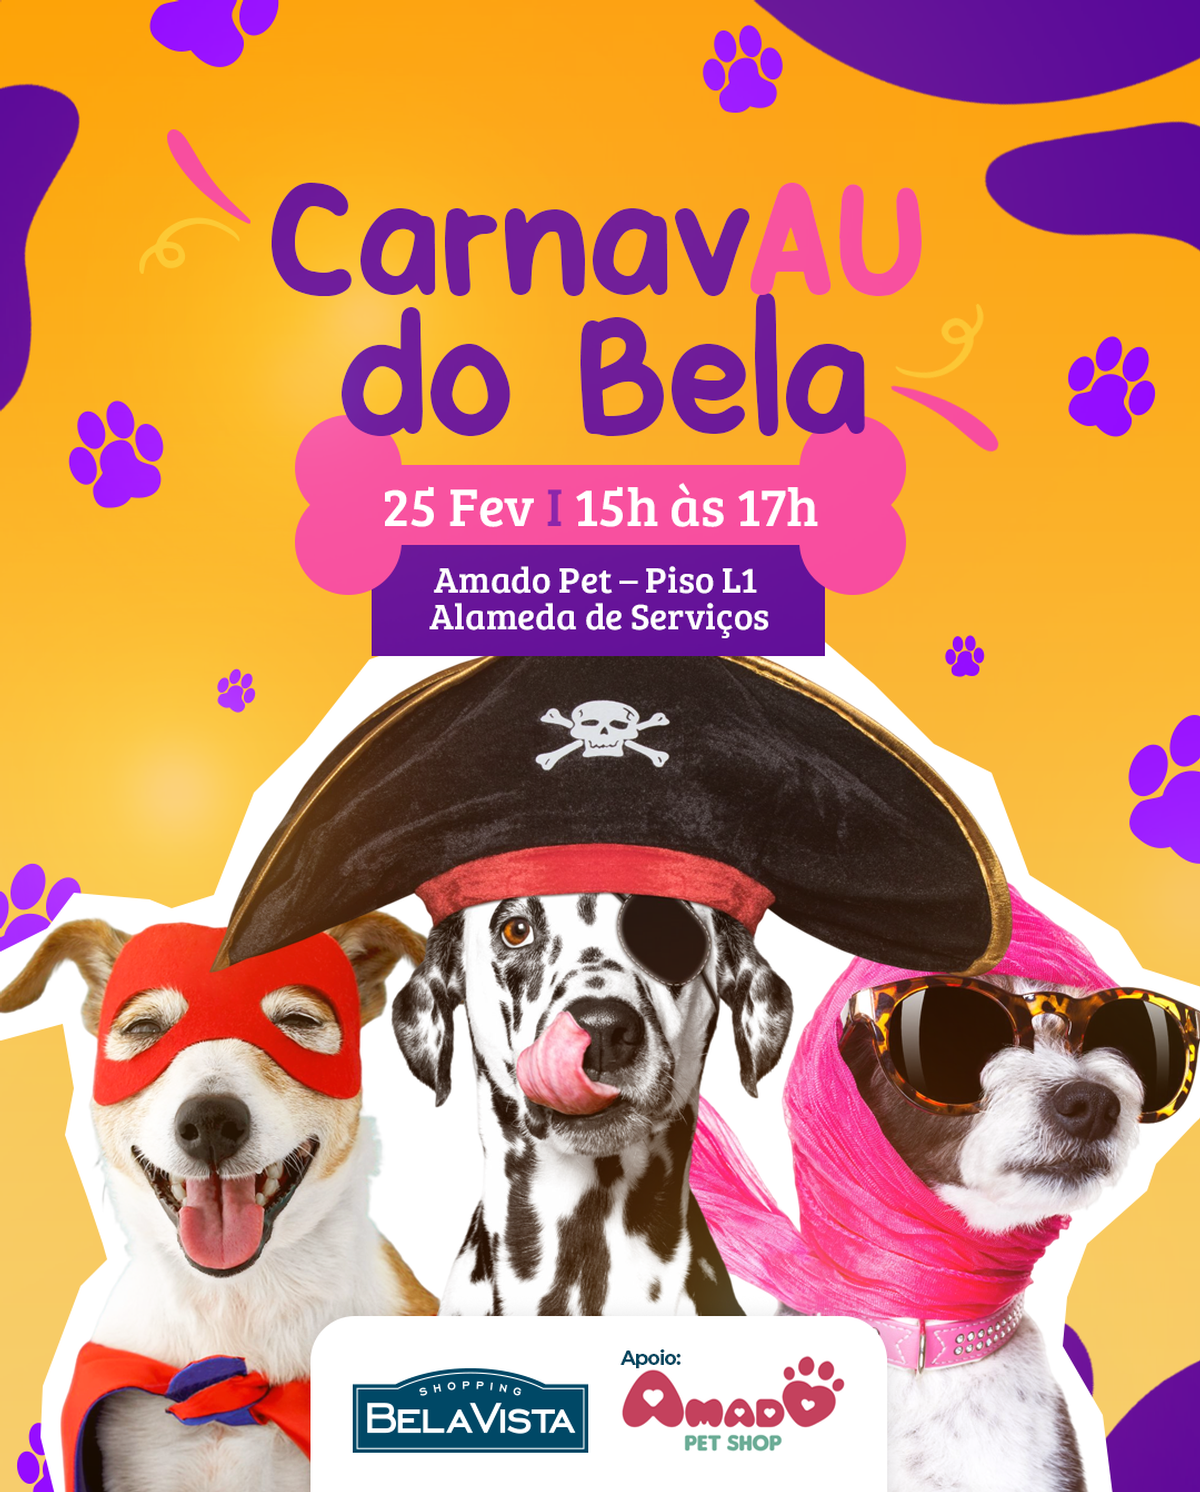 Shopping Bela Vista realiza CarnavAu do Bela no sábado (25/02) depois do Carnaval